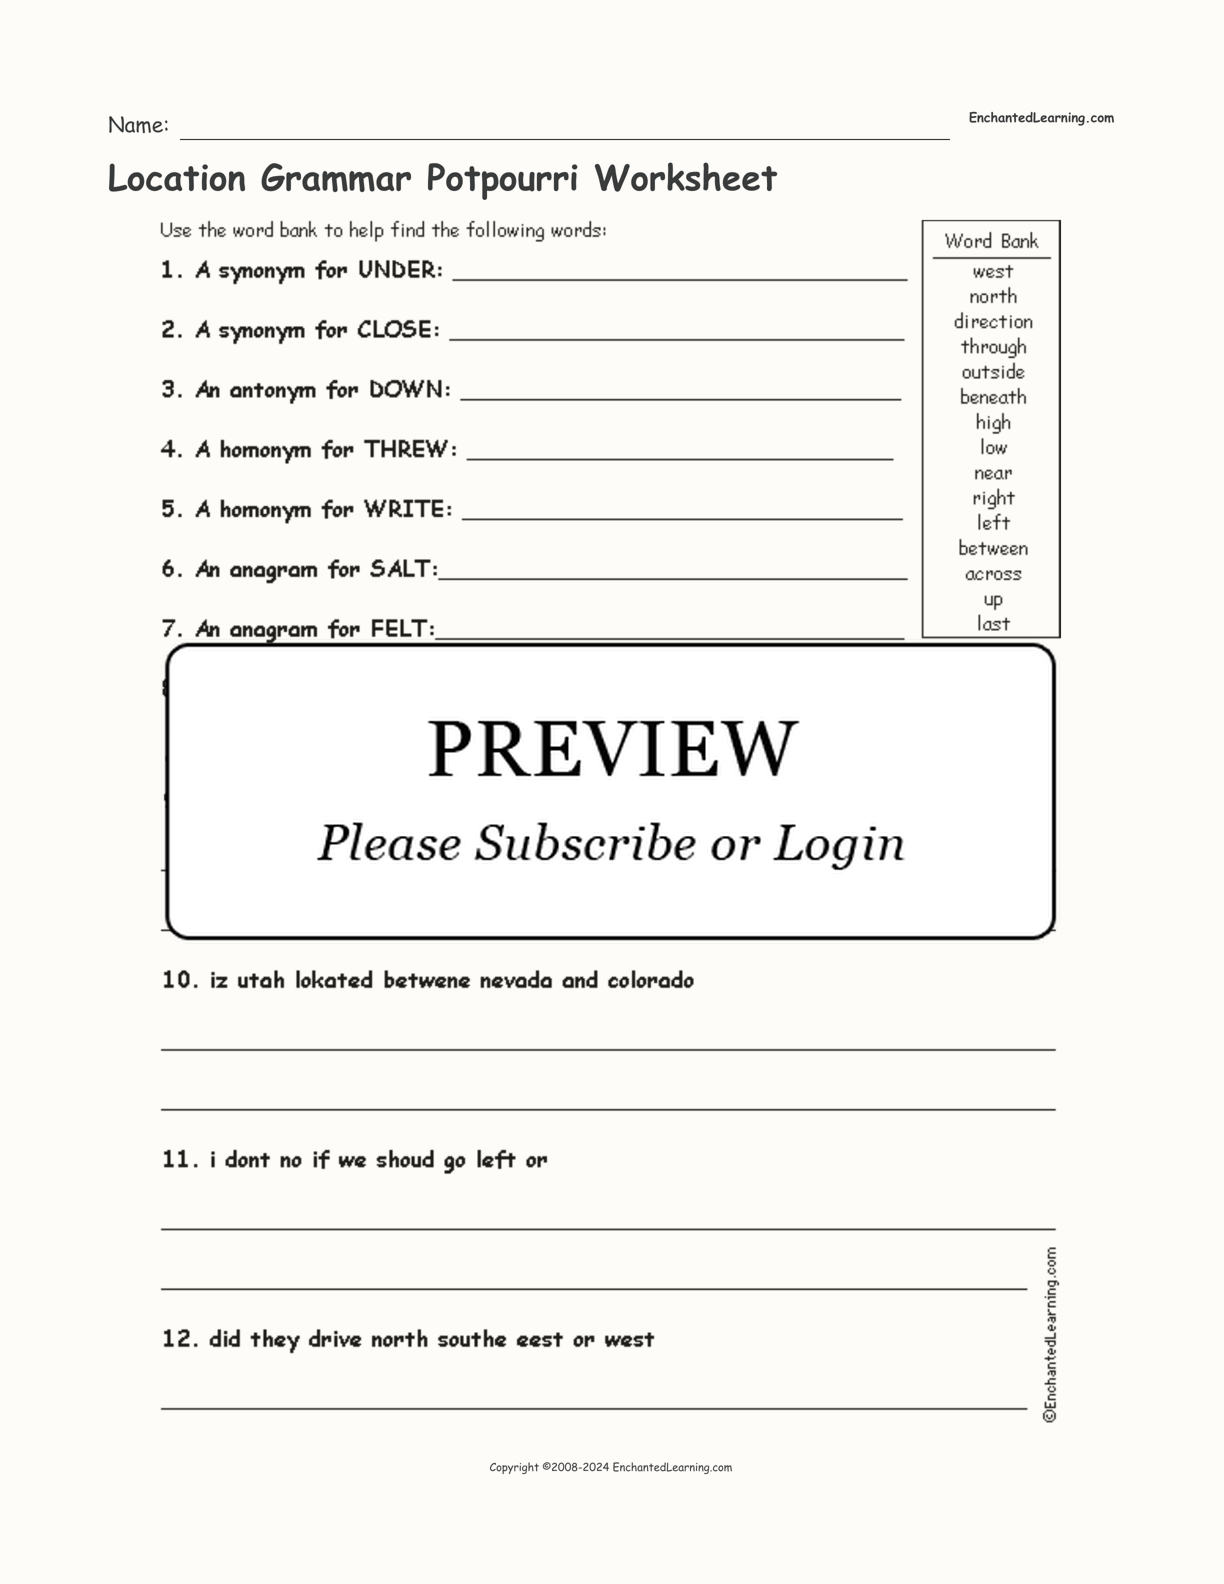 Location Grammar Potpourri Worksheet interactive worksheet page 1